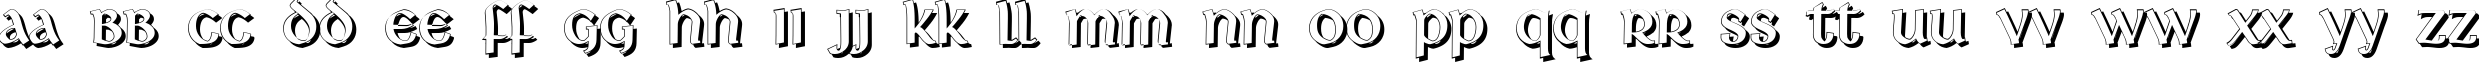 Пример написания английского алфавита шрифтом Deutsche Uncialis Shadow